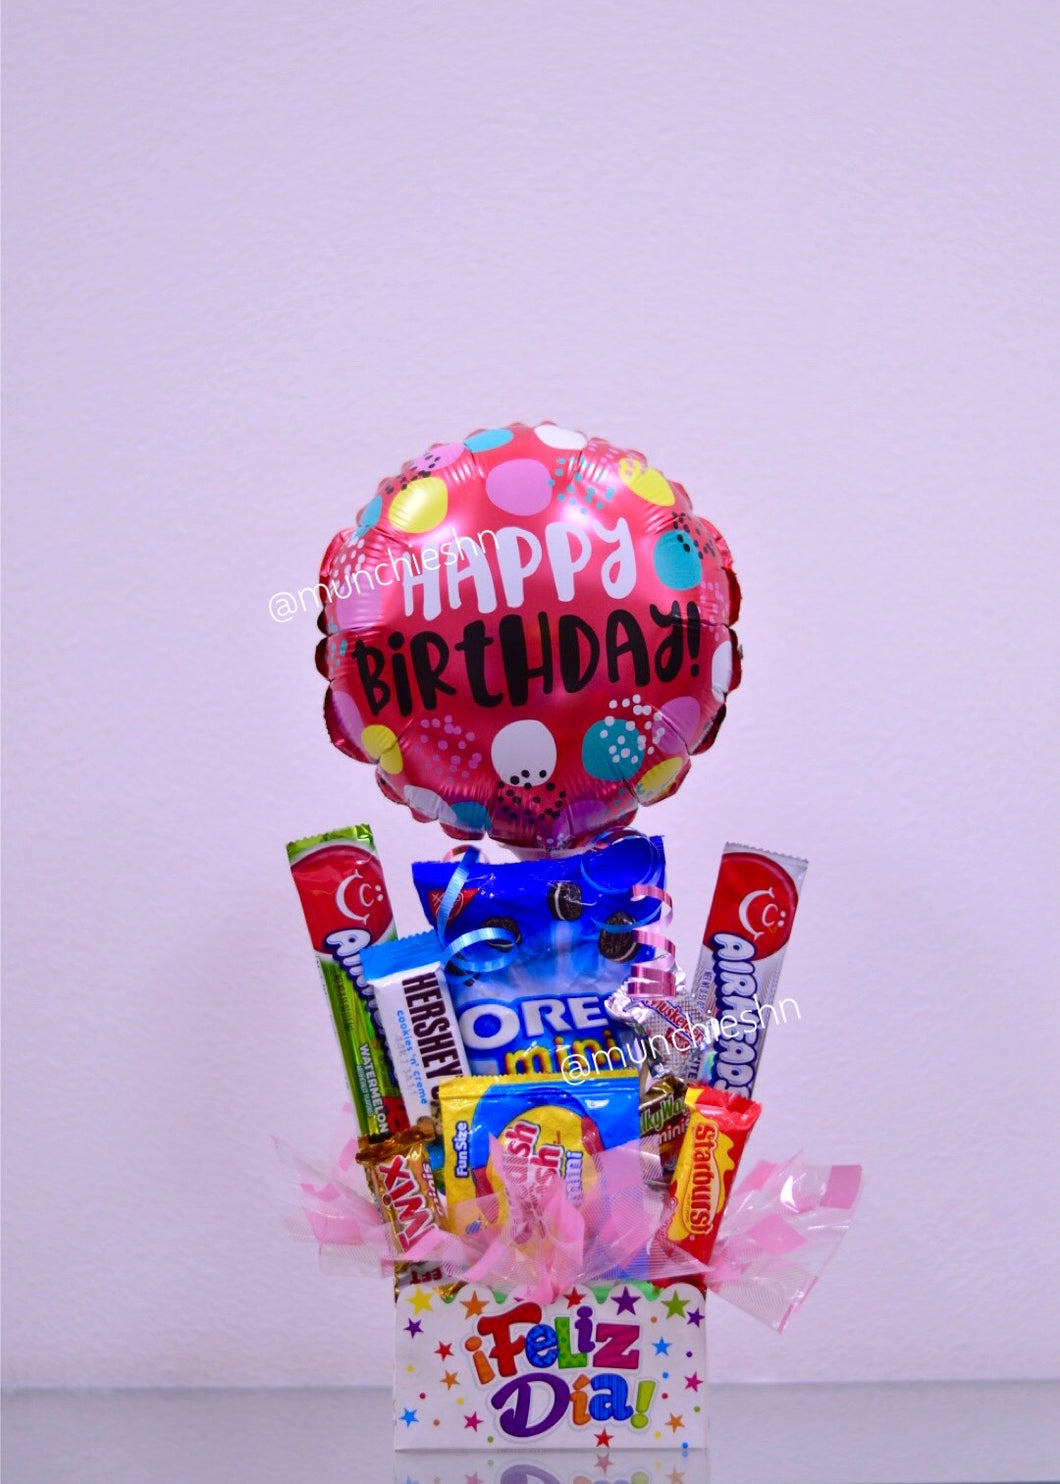 Arreglo de regalo Cajita feliz dia con dulces y chocolate americano con globo mediano, perfecto para desear un feliz cumpleanos. Puede ser regalo para mujer u hombre, amigos, ninos.